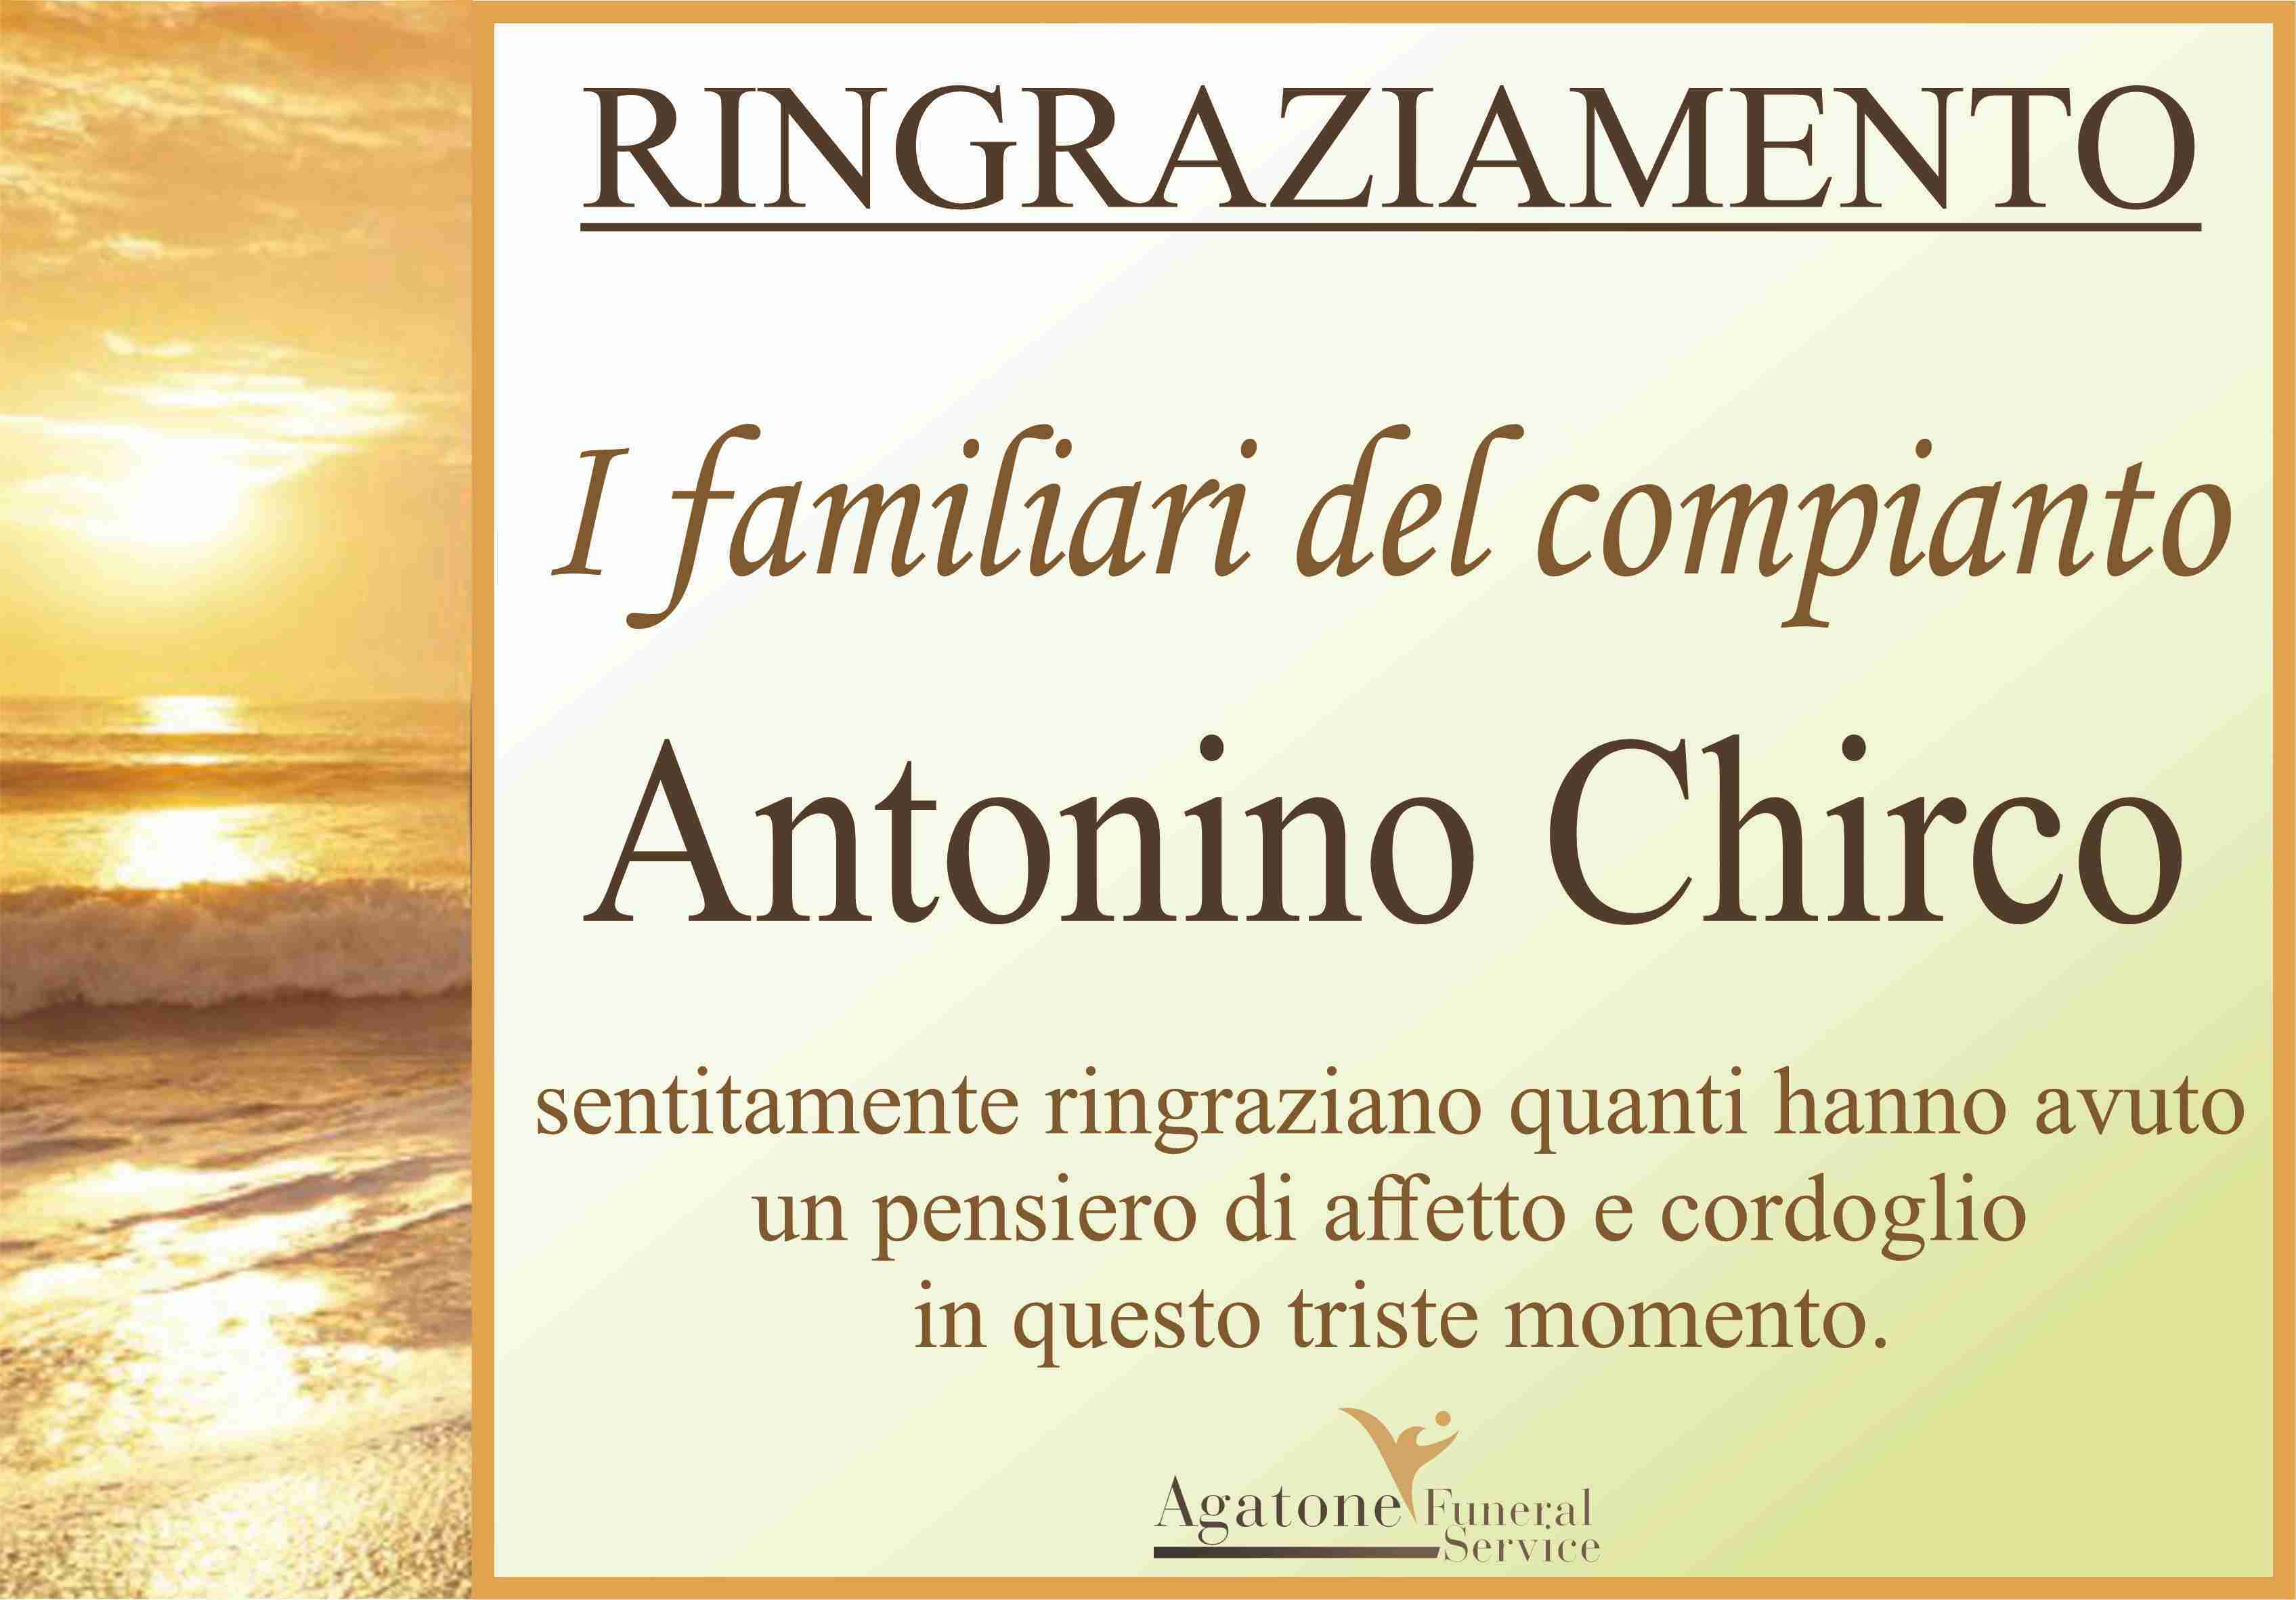 Antonino Chirco